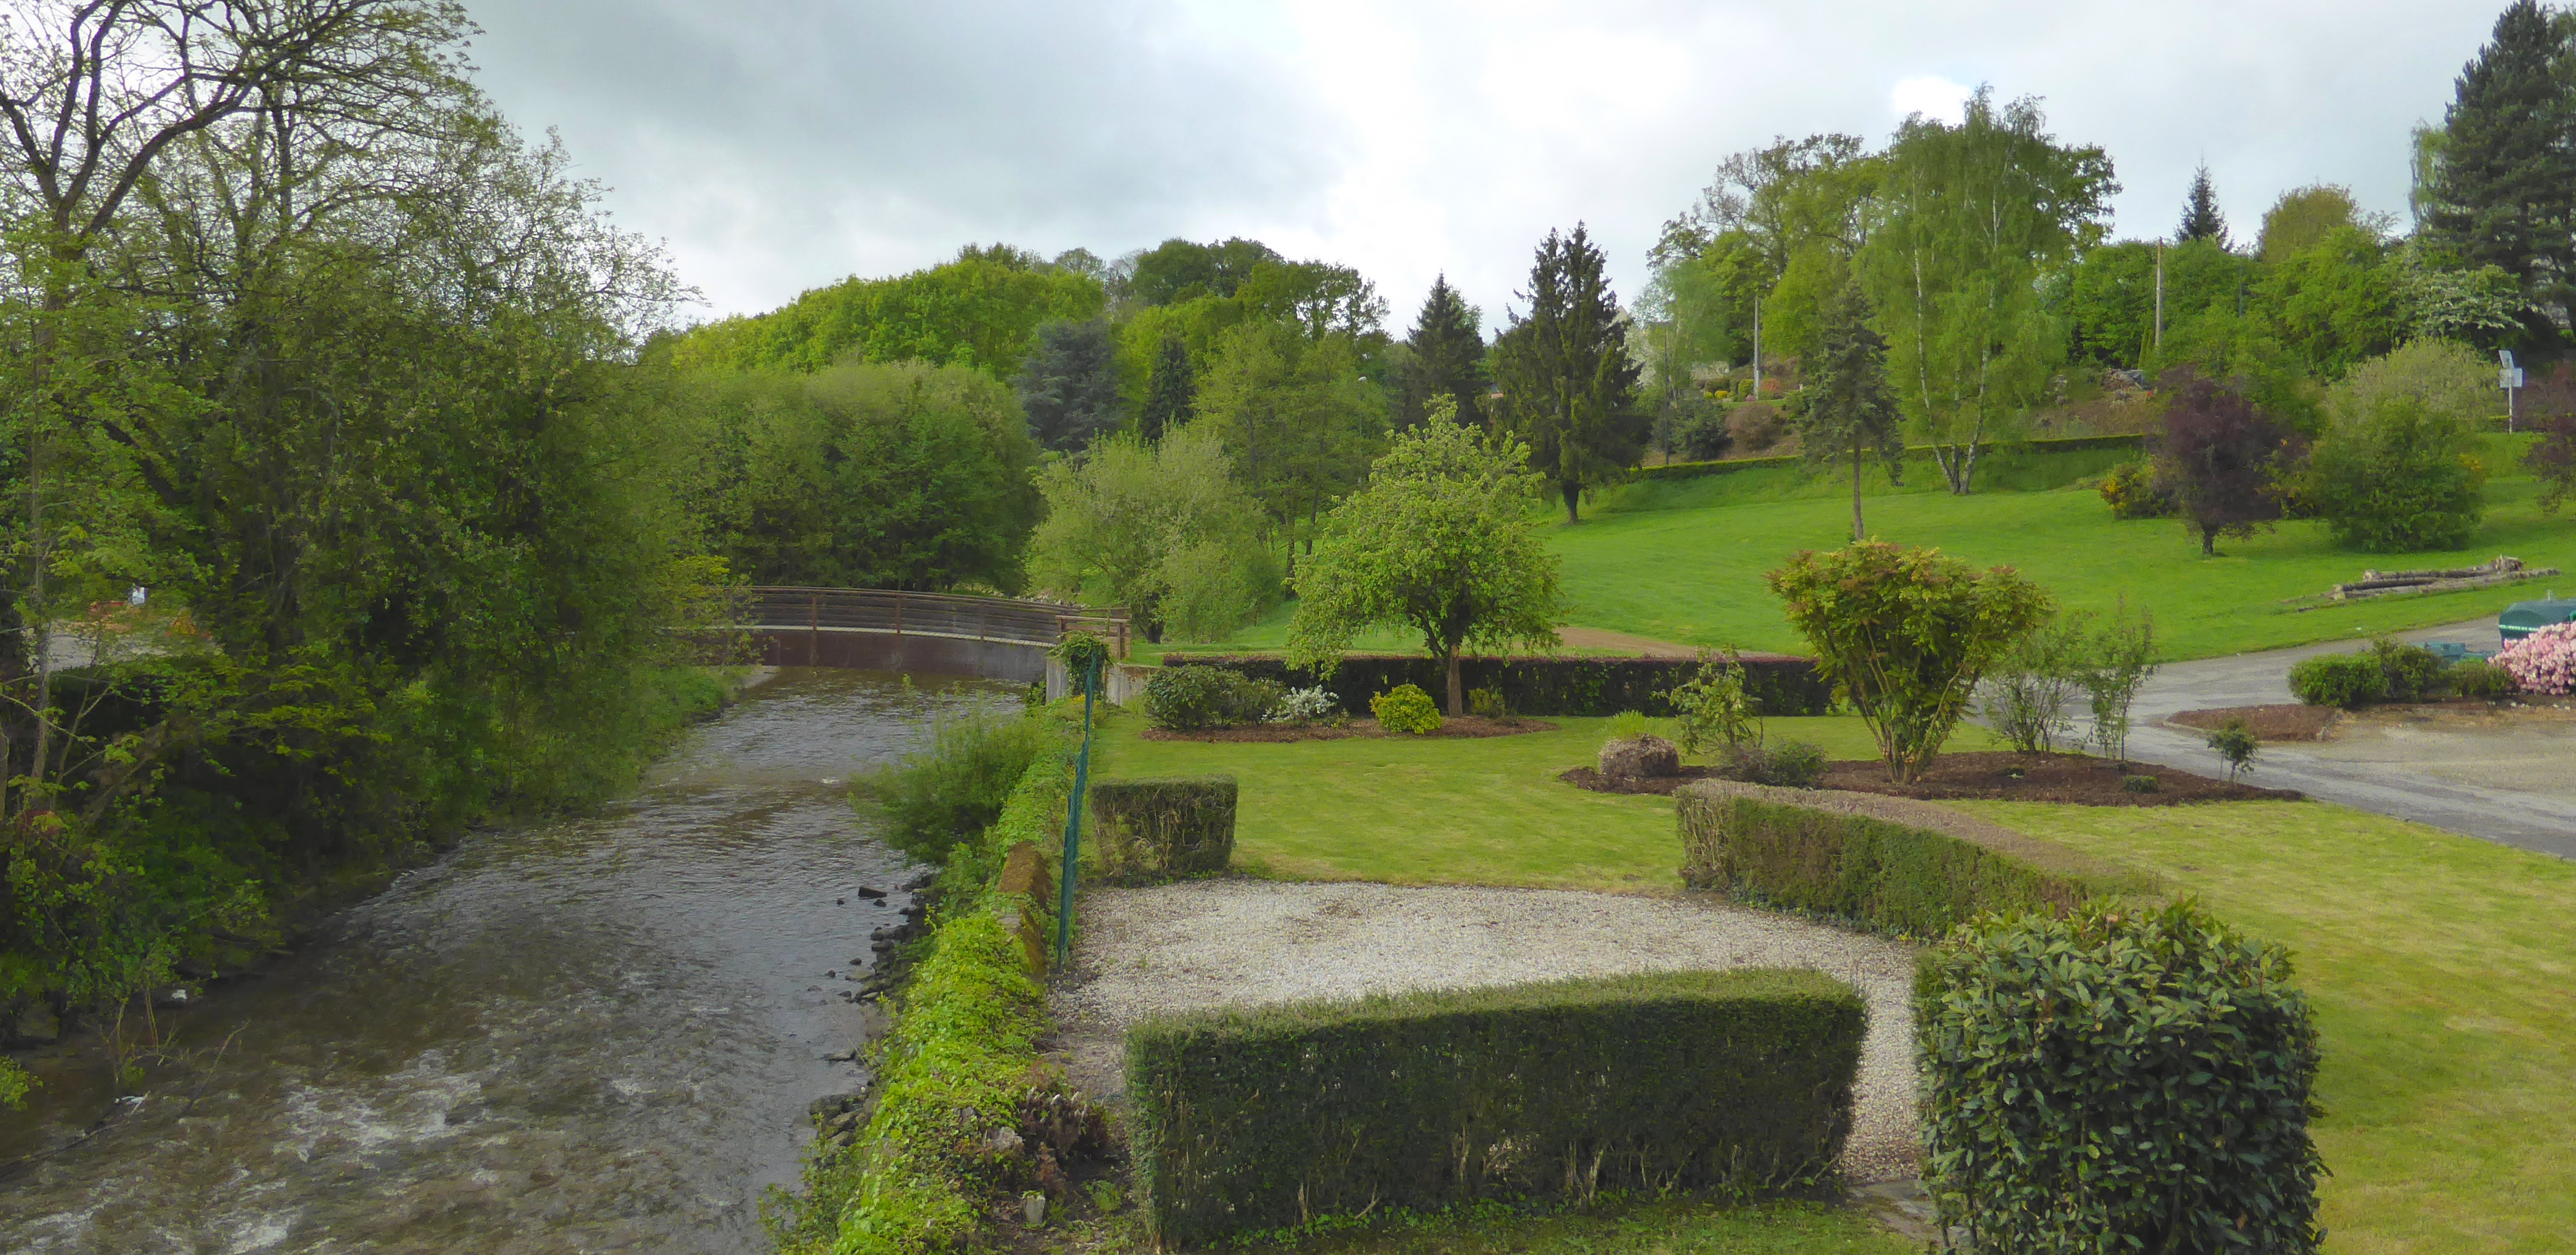 A Gorron, l'aménagement d'un parc paysager aux abords de la Colmont favorise une meilleure accessibilité et appropriation de la vallée (Gorron – 2015) en grand format (nouvelle fenêtre)